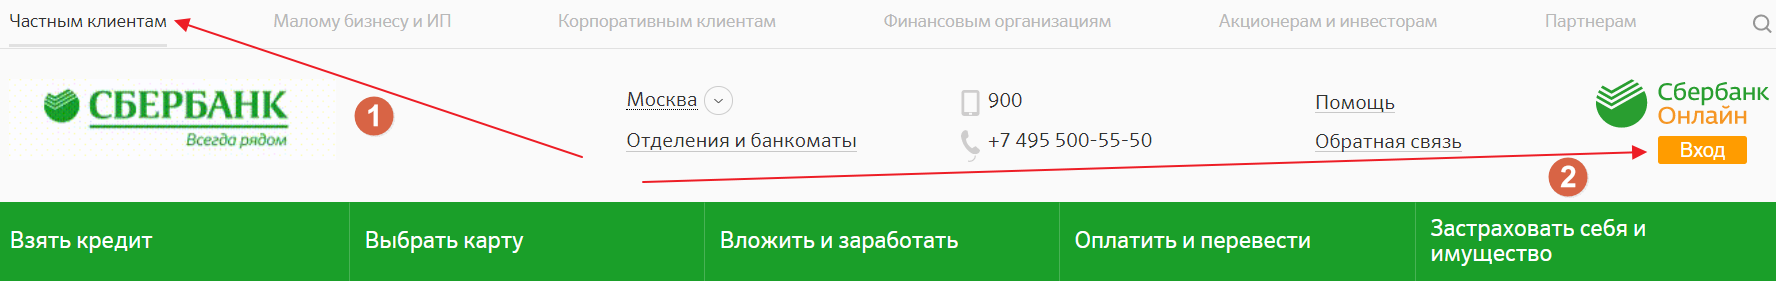 Sberbank ru9443. Сбербанк малому бизнесу и ИП вход.